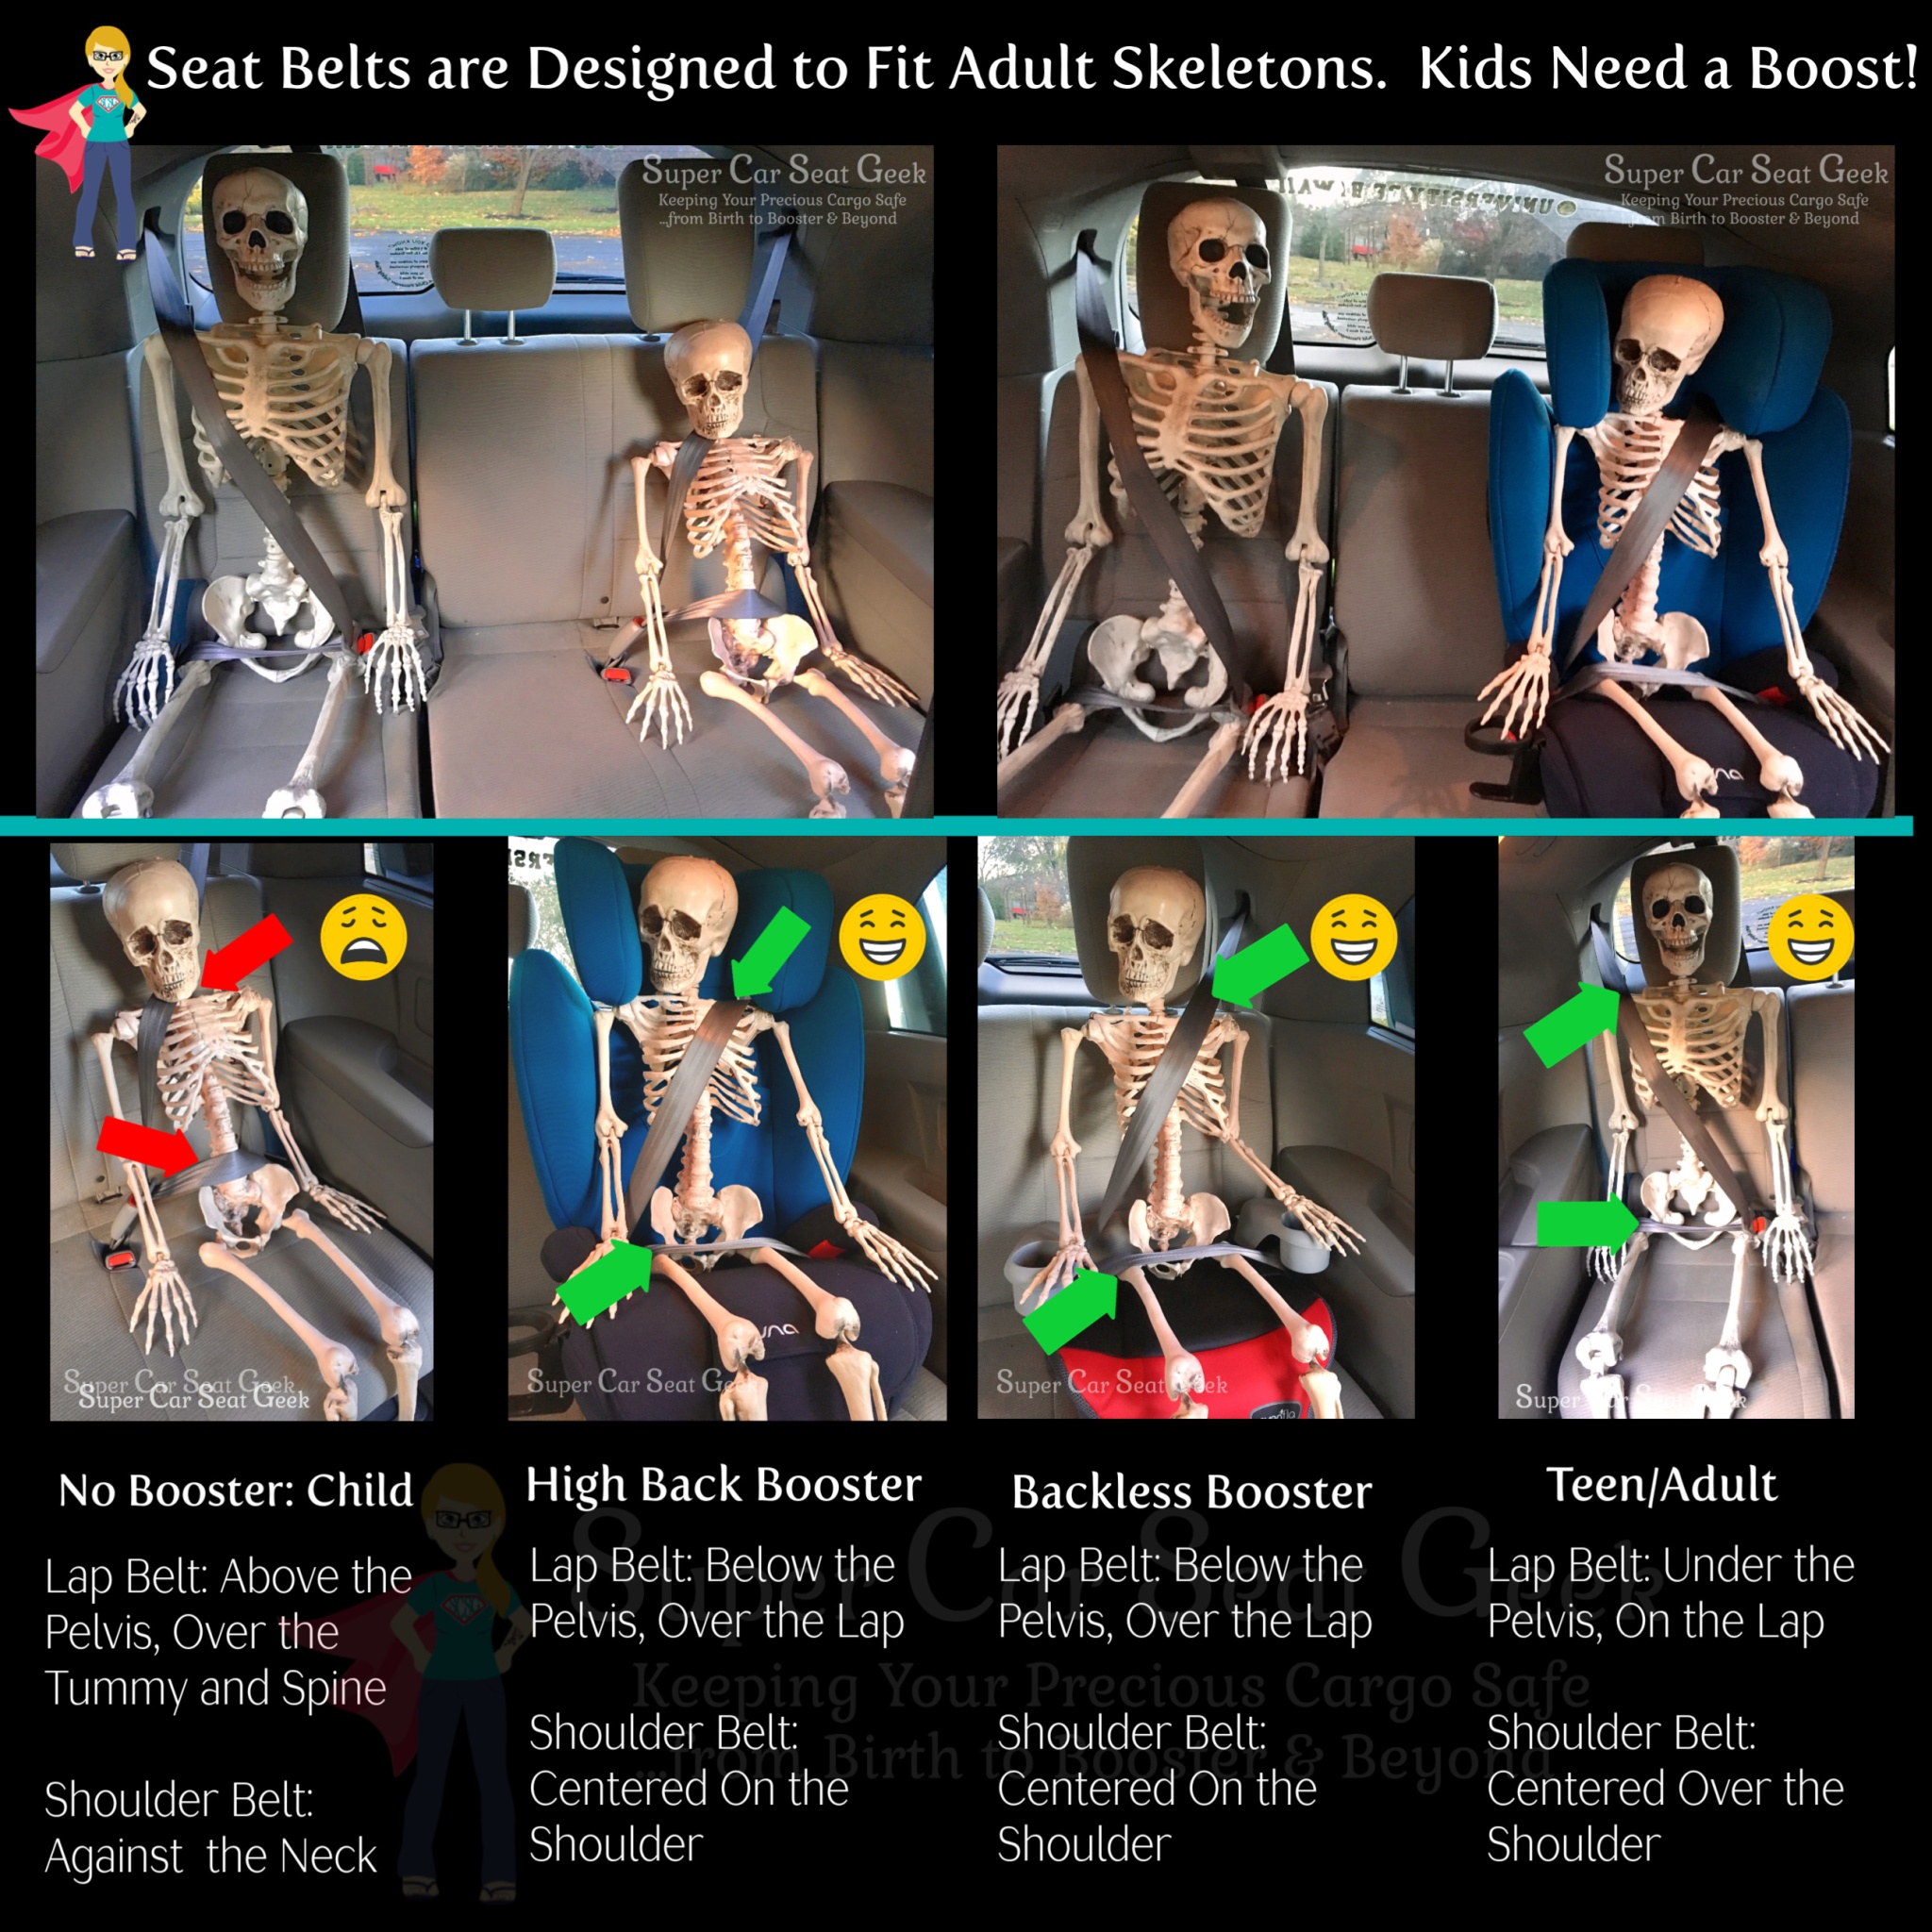 https://supercarseatgeek.files.wordpress.com/2018/10/super-car-seat-geek-skeleton-seat-belts.jpg?w=2048